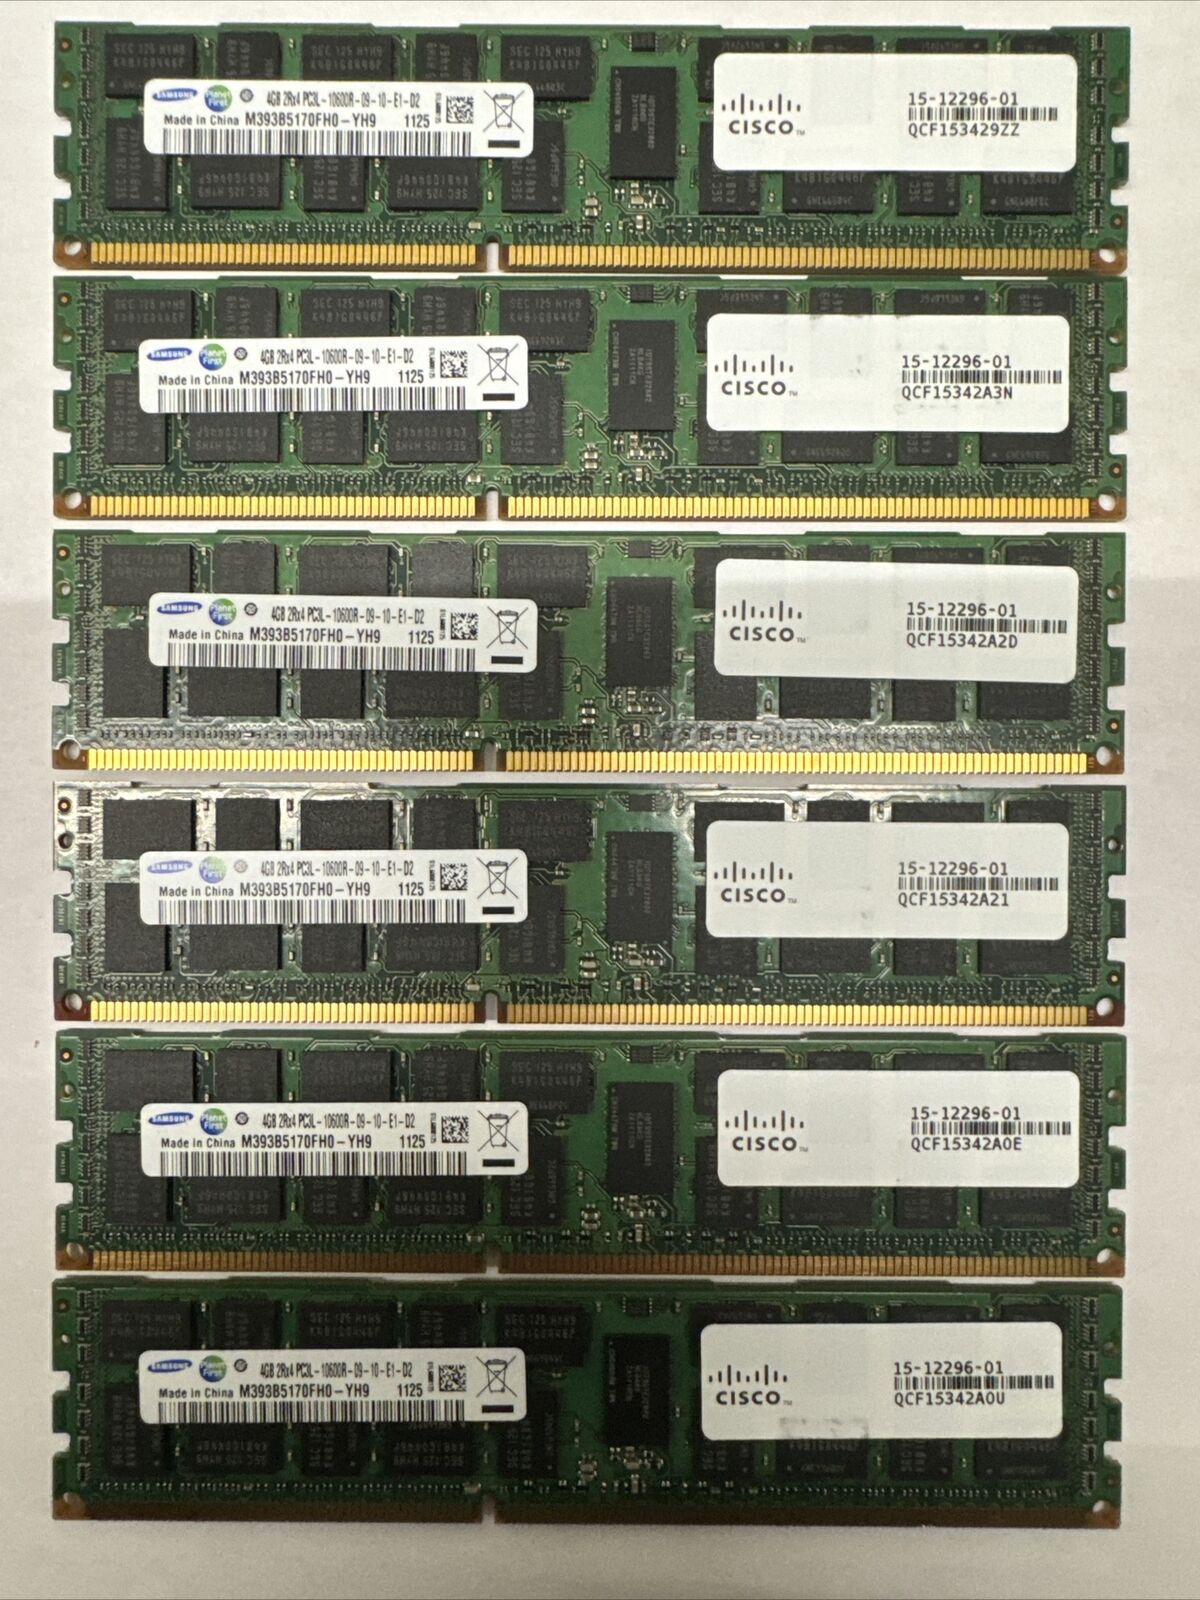 24GB (6x4GB) - SAMSUNG 4GB 2Rx4 PC3L-10600R DDR3 SERVER RAM (393B5170FH0-CH9)